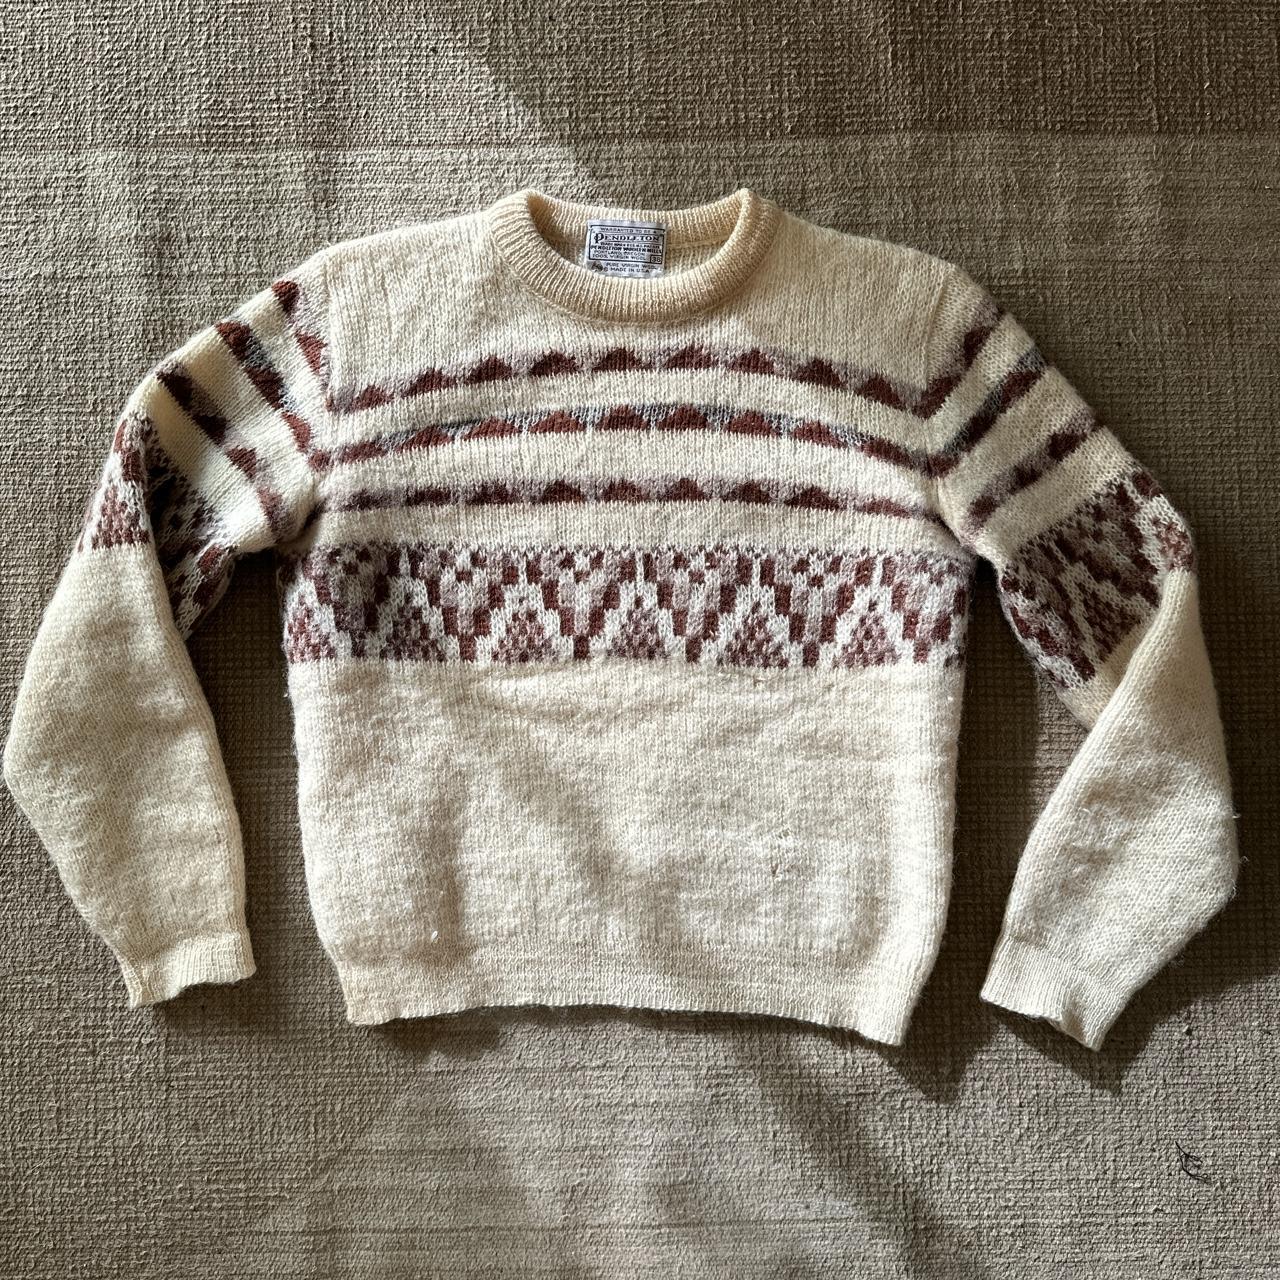 Pendleton Wool Sweater 100% virgin wool Pit to... - Depop